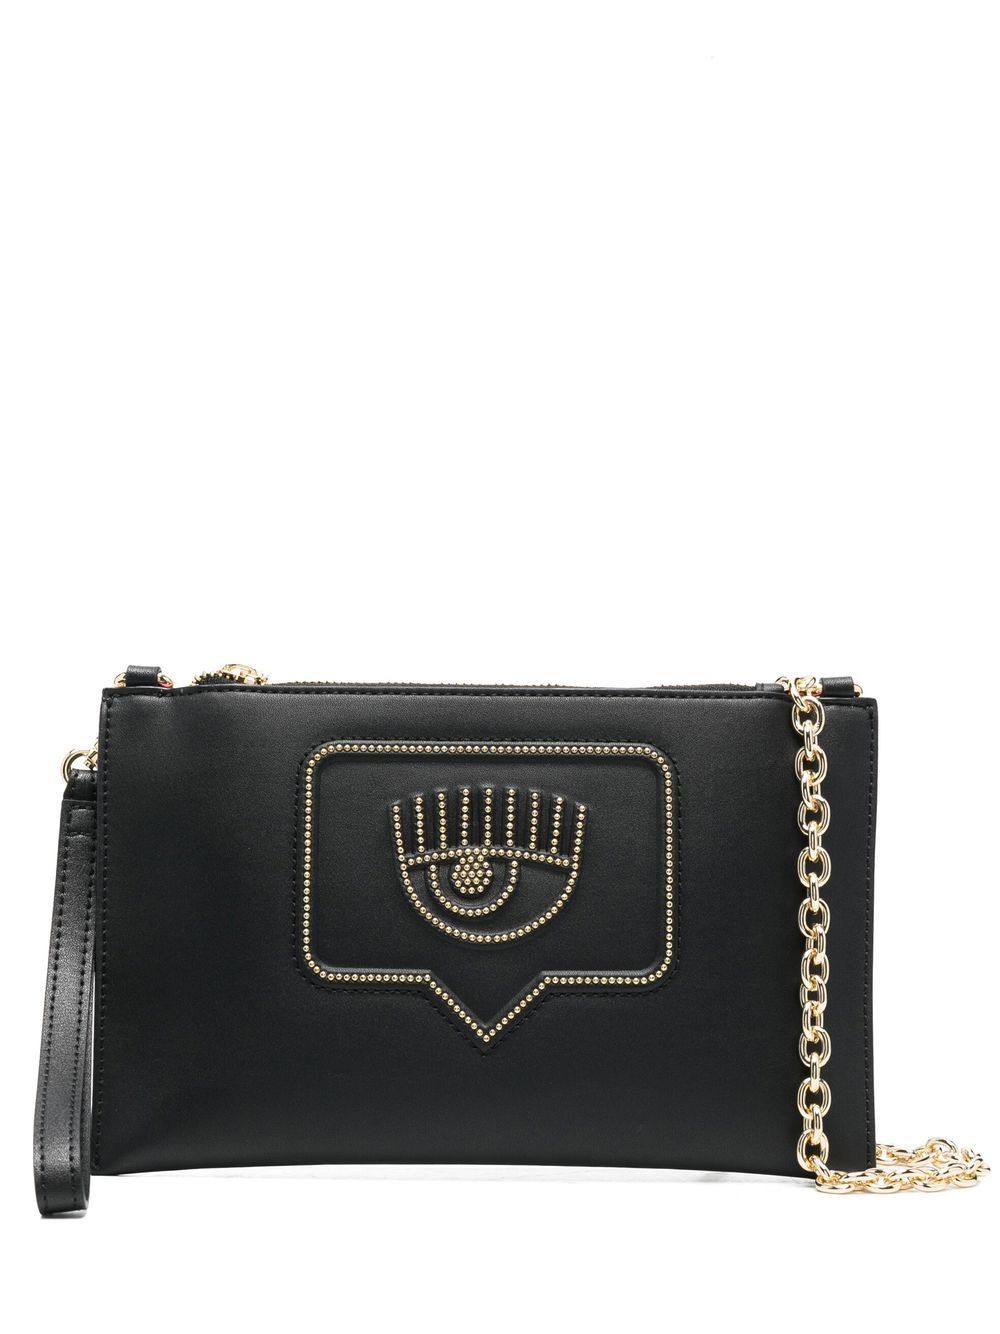 Chiara Ferragni stud-embellished clutch bag - Black